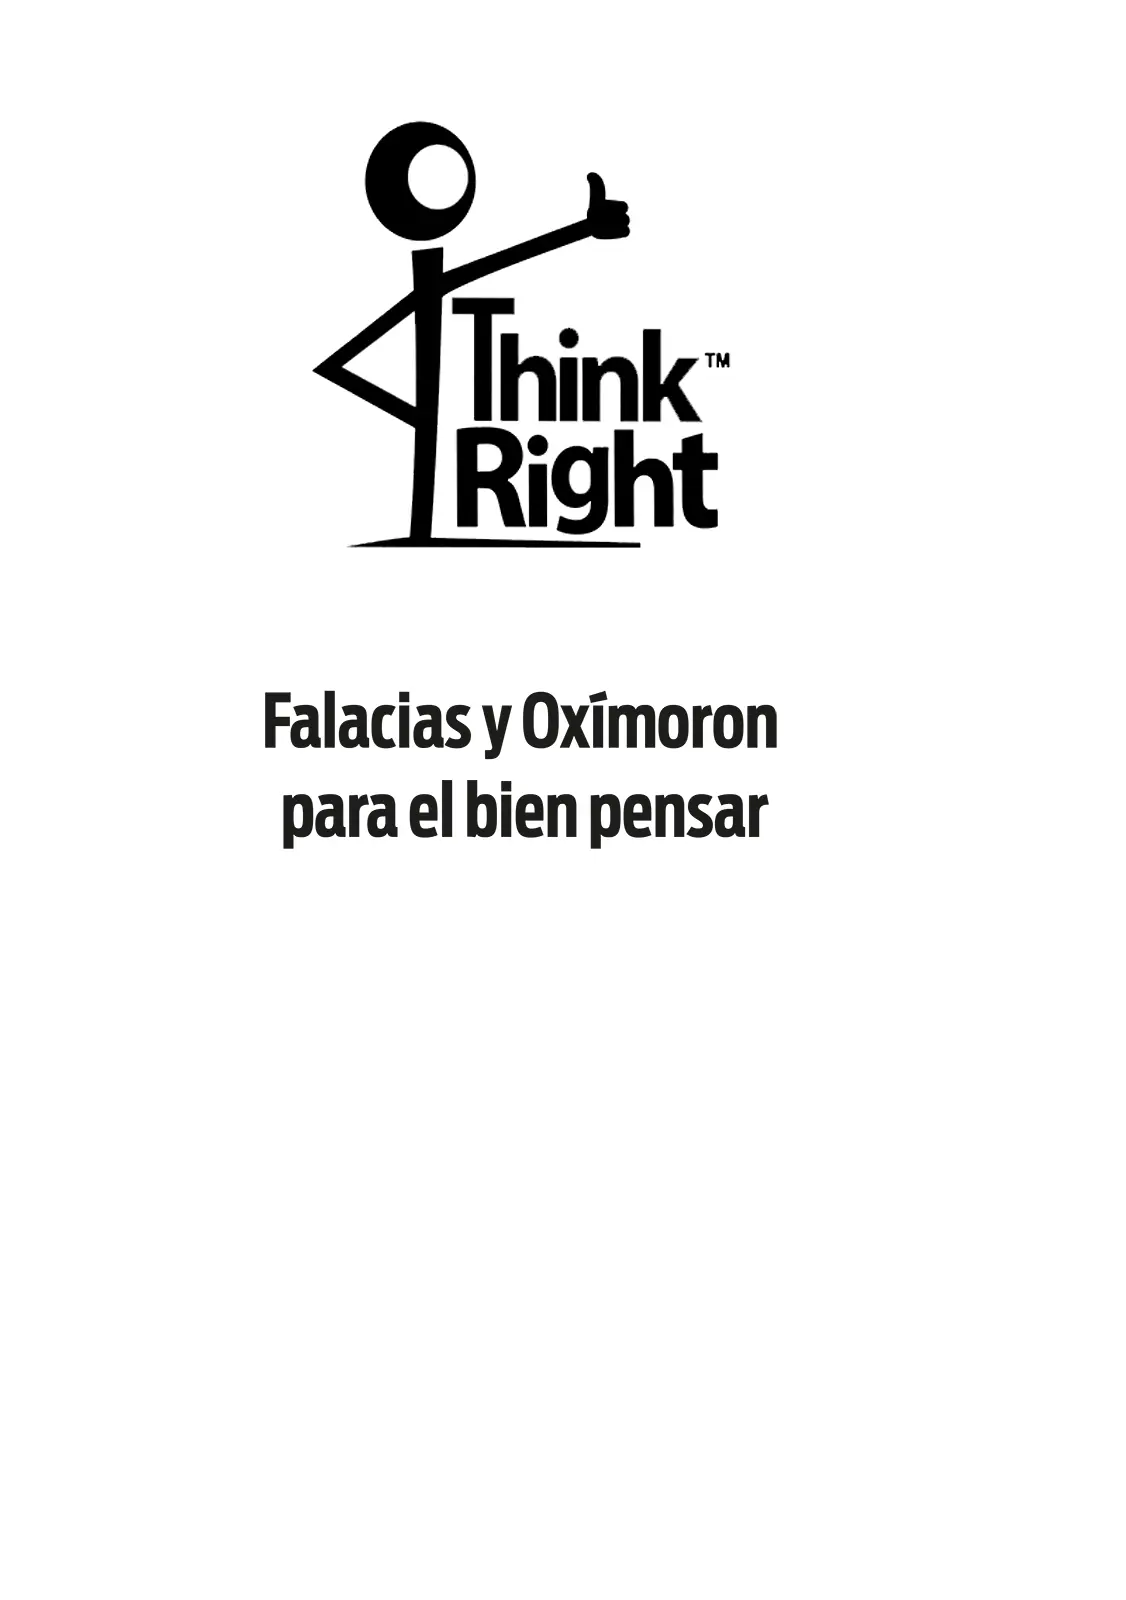 Think right Falacias y Oxímoron para el bien pensar 2021 José Mora O ISBN - фото 1